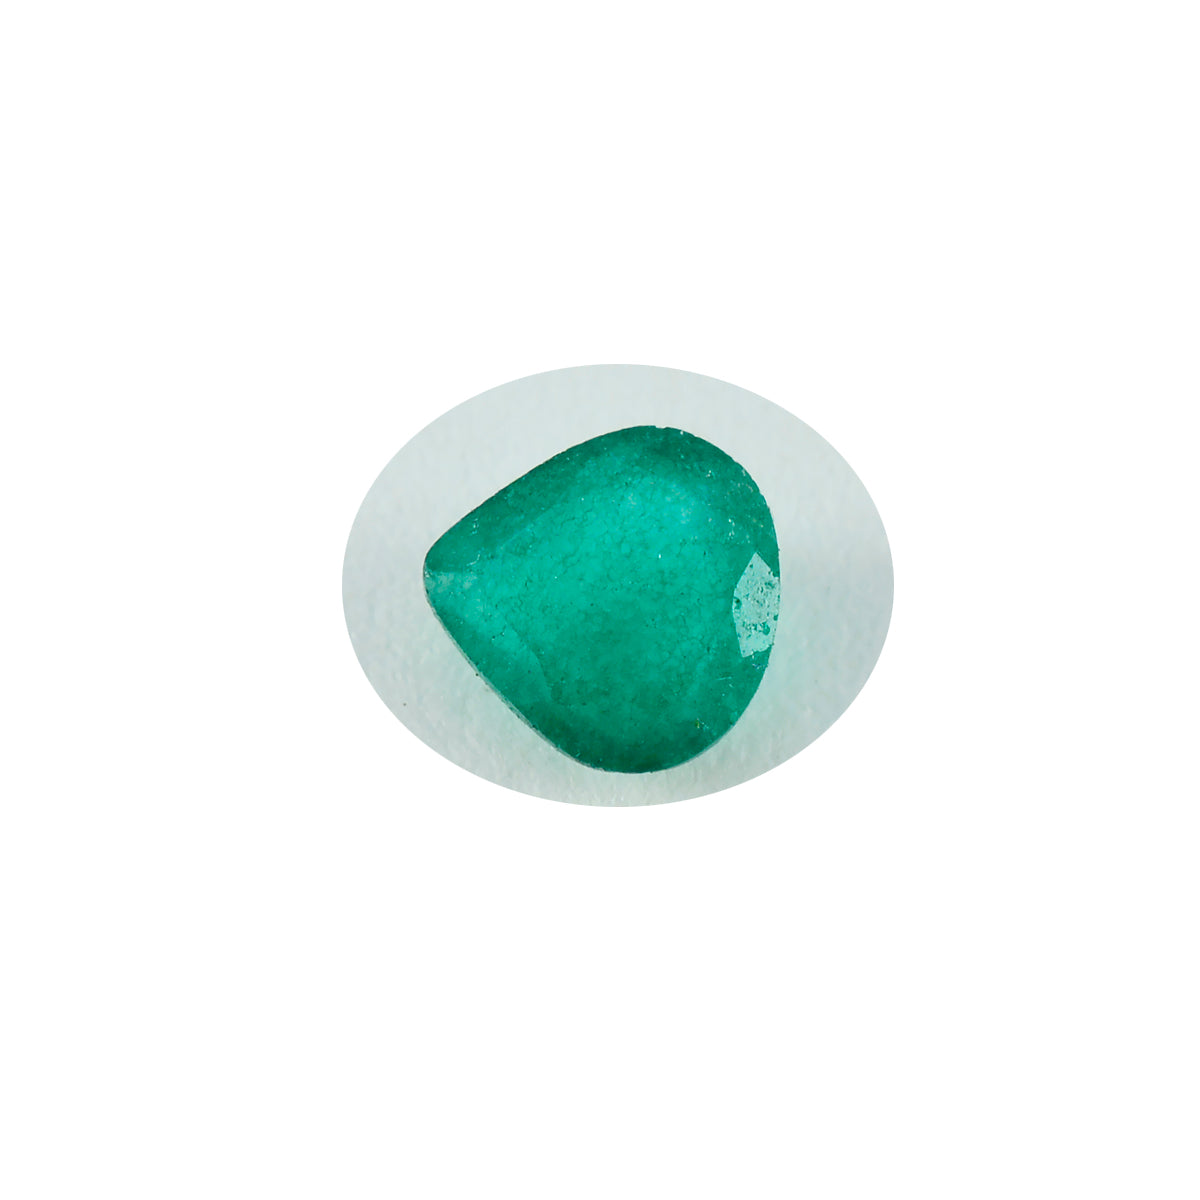 riyogems 1pc ナチュラル グリーン ジャスパー ファセット 12x12 mm ハートシェイプ a+1 品質の宝石